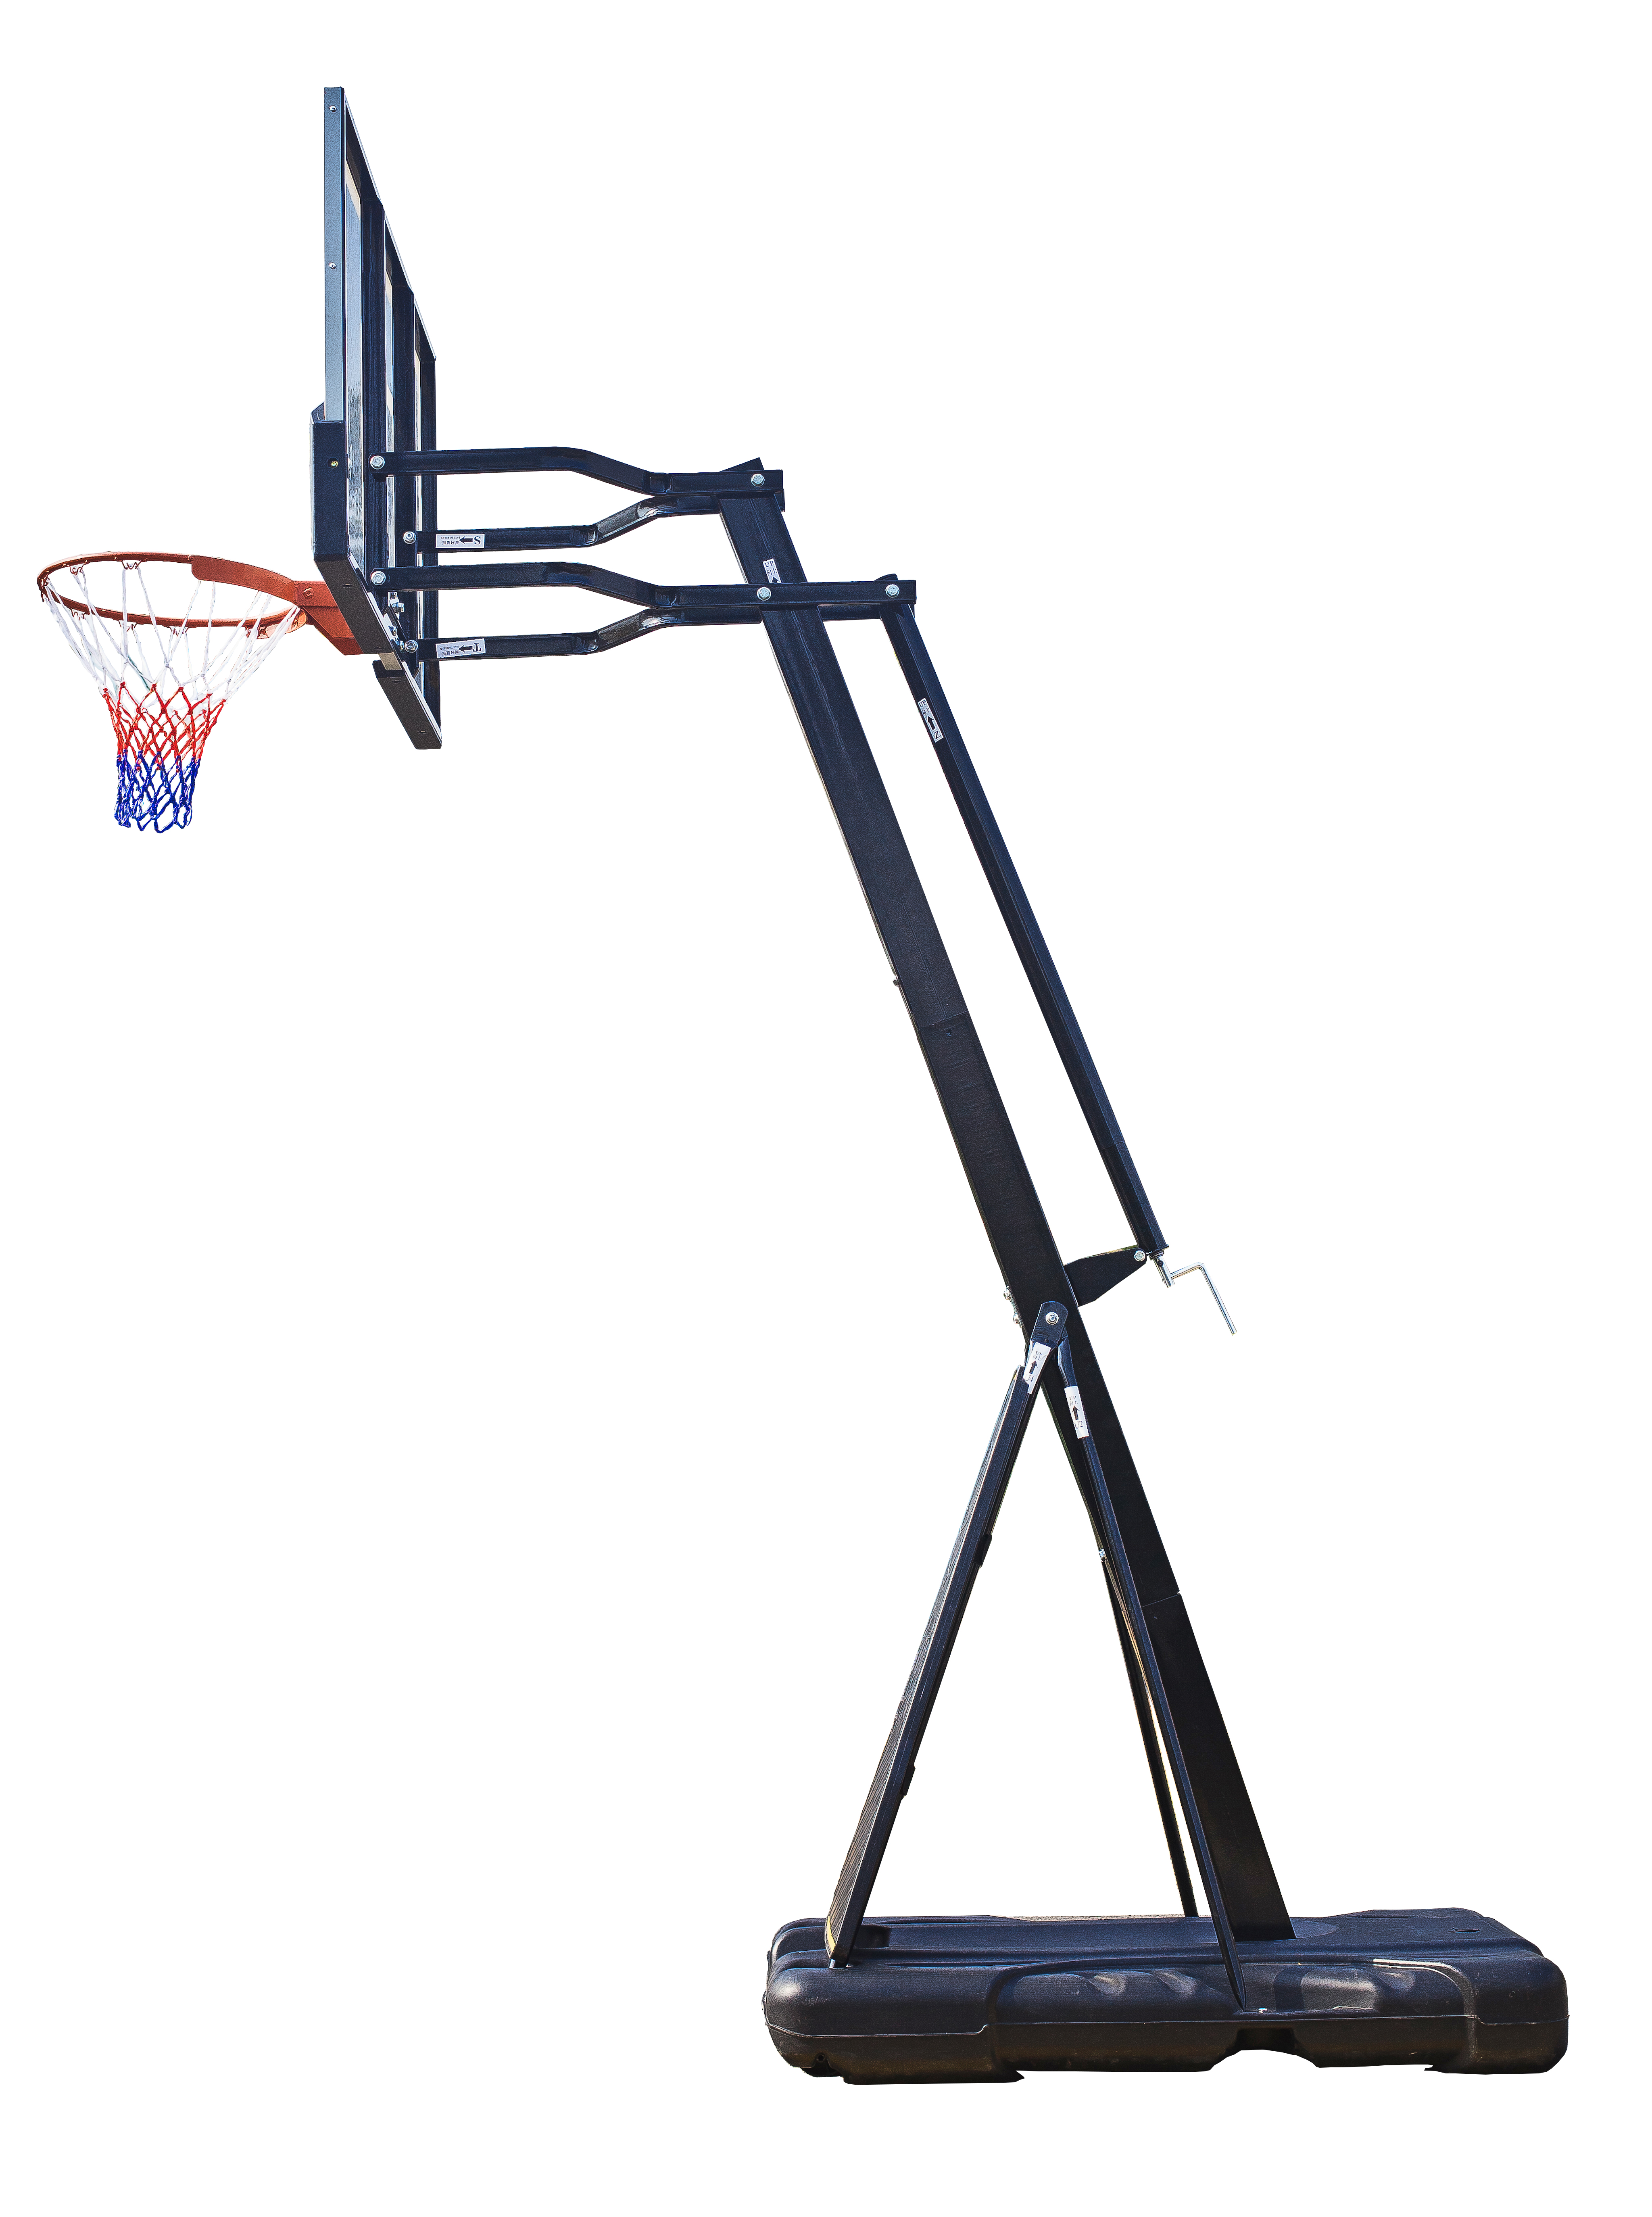 Мобильная баскетбольная стойка Proxima 54", стекло. Фото N2